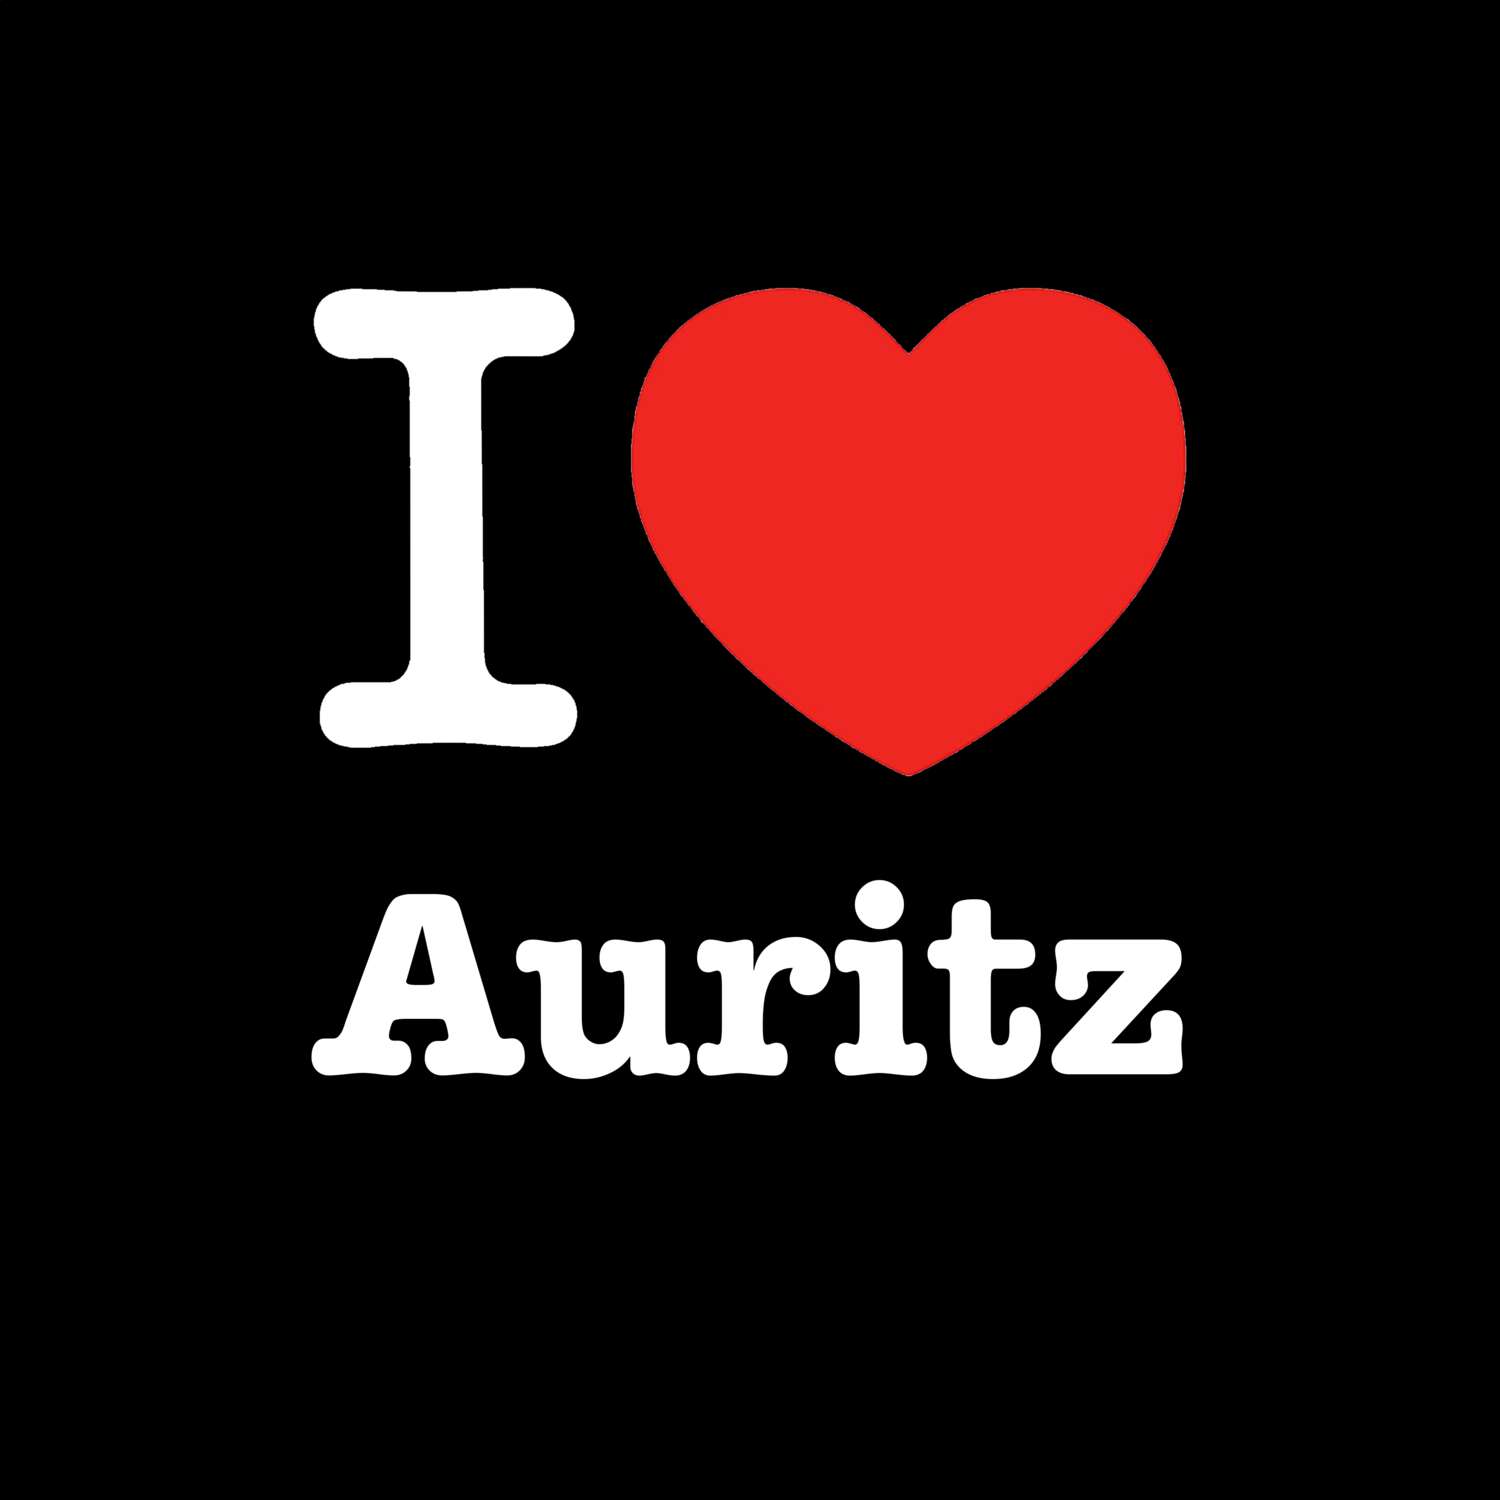 Auritz T-Shirt »I love«